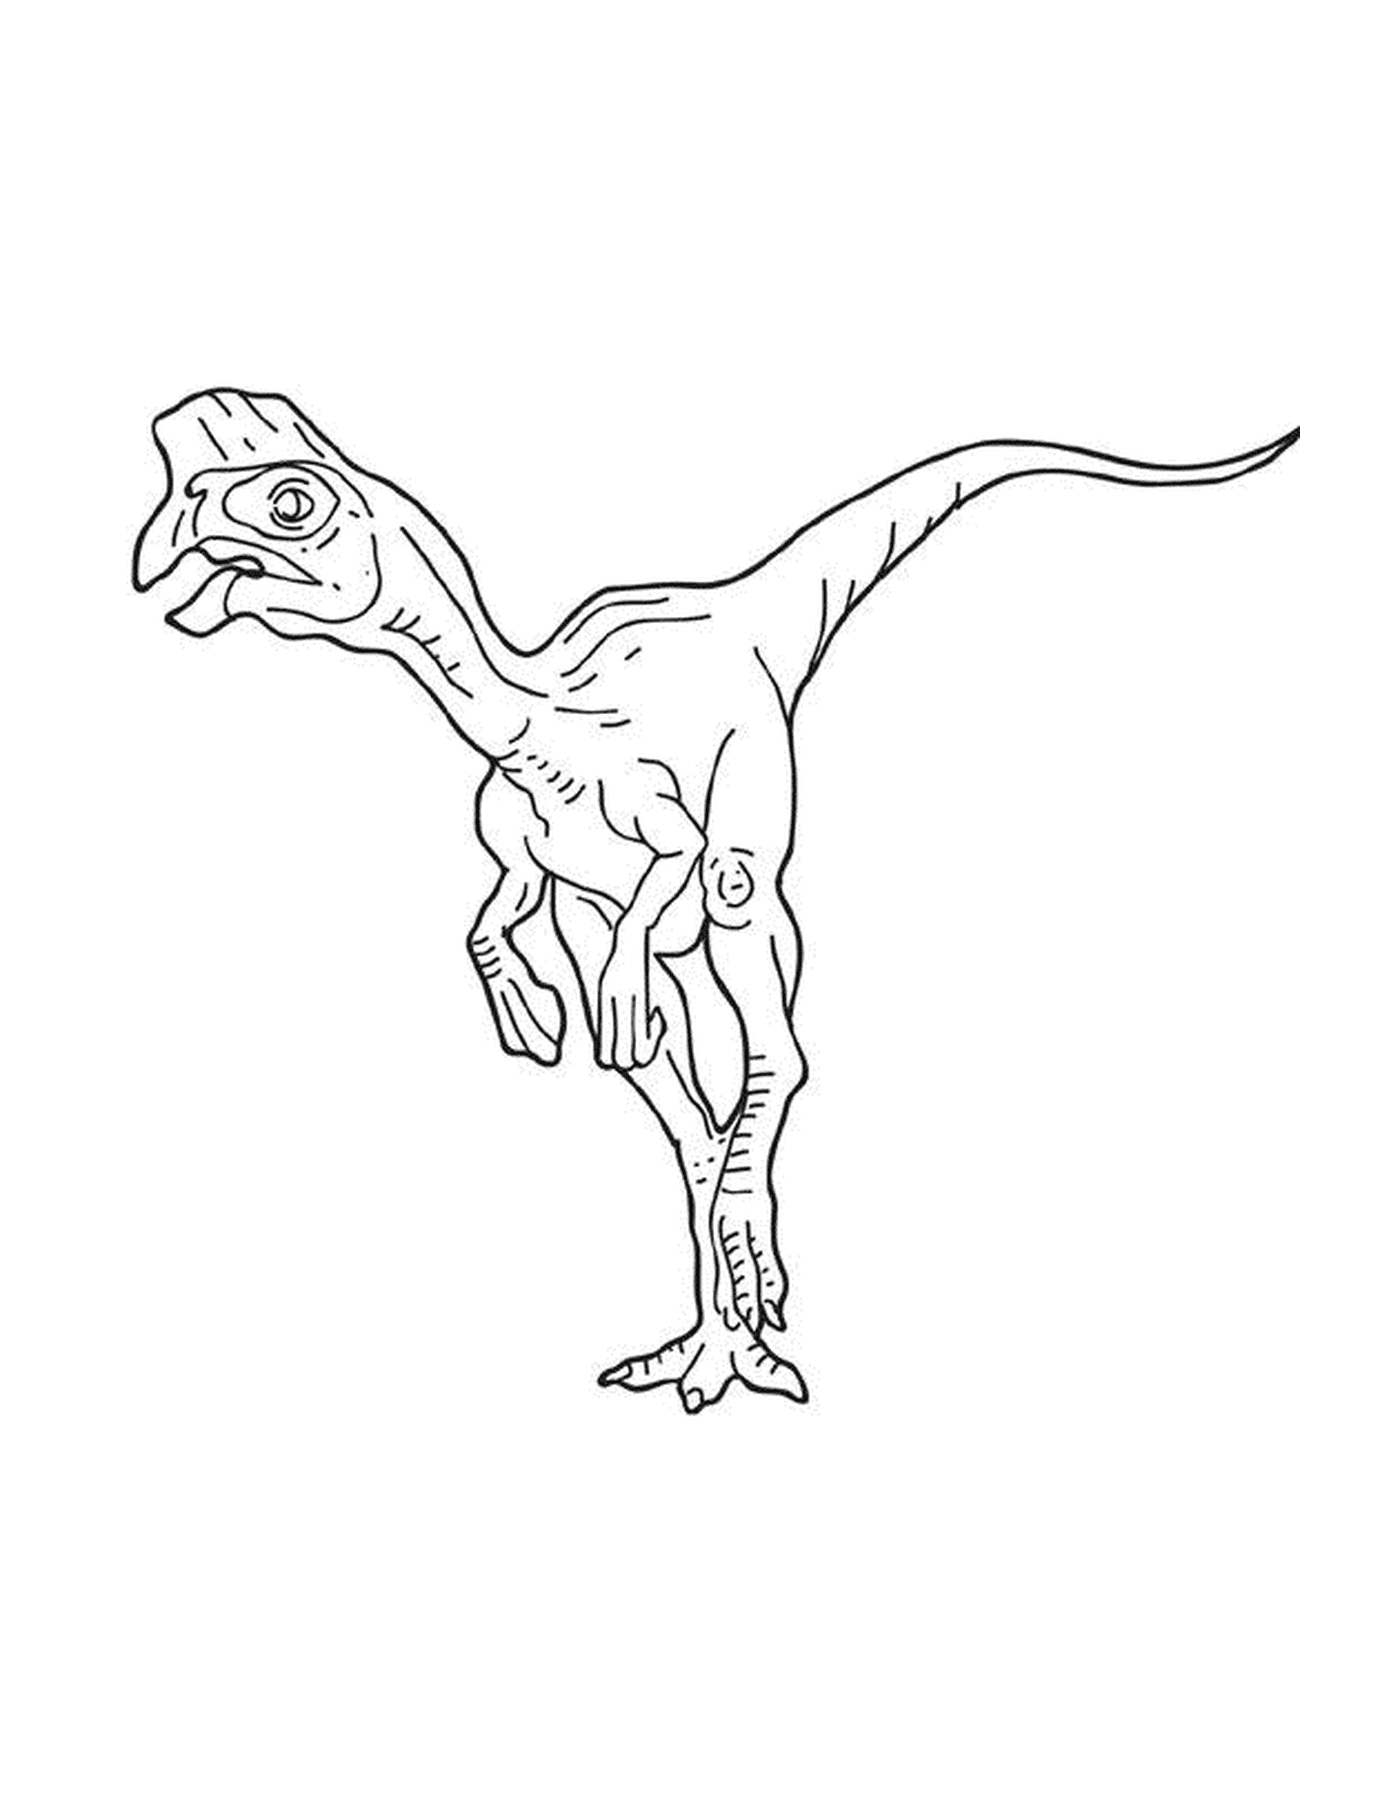  Un dinosaurio oviraptor de pie 